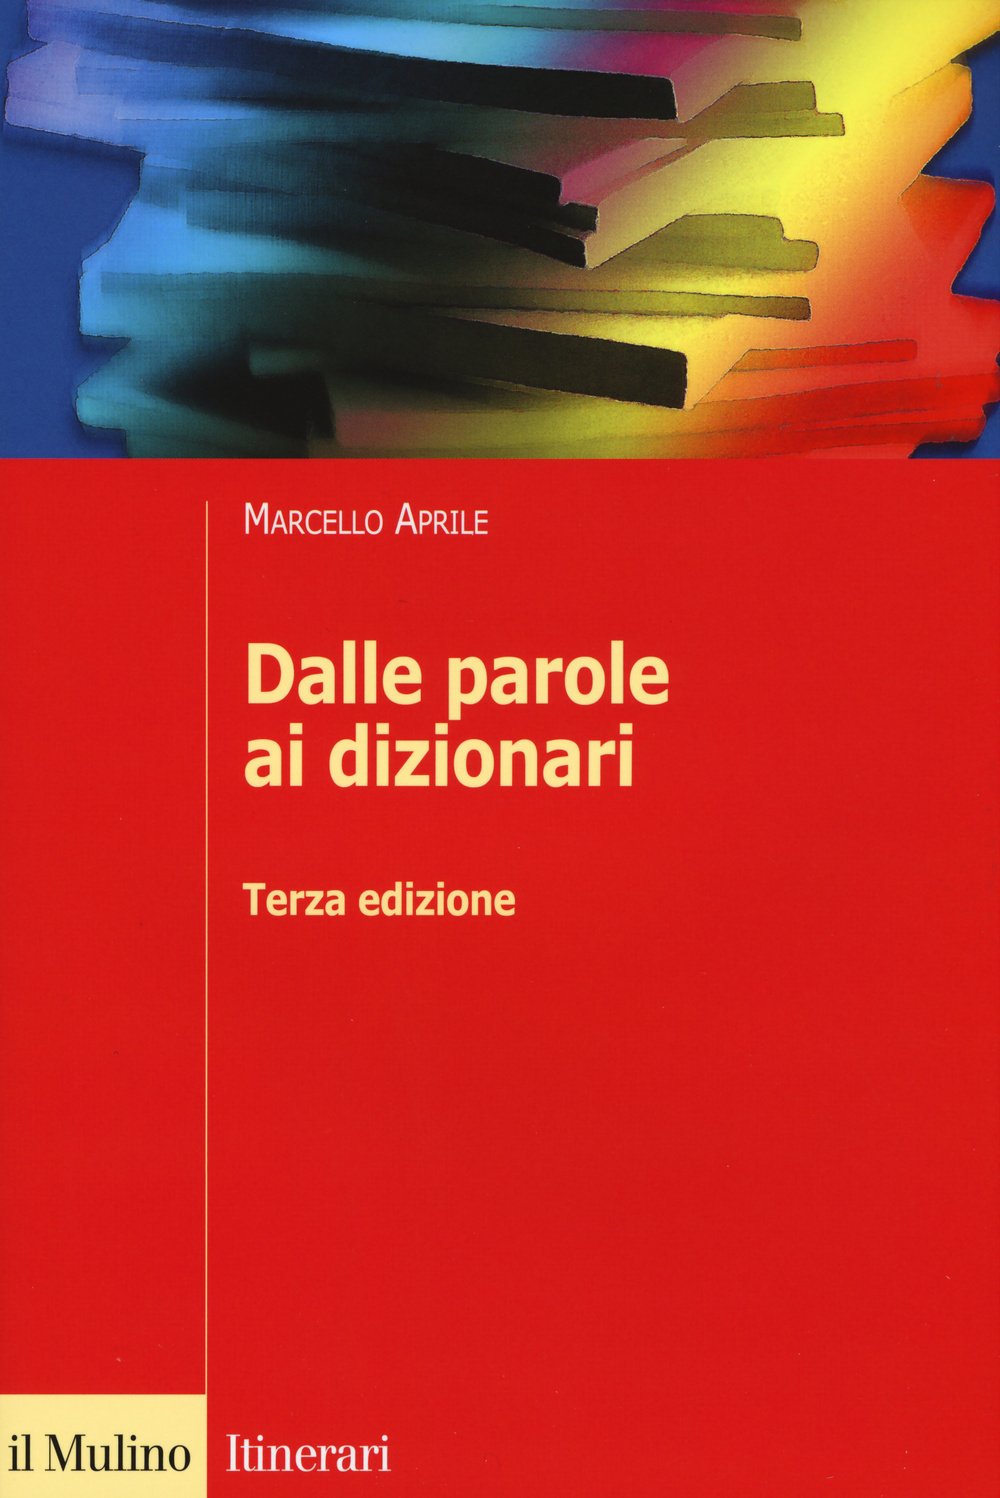 Libri Marcello Aprile - Dalle Parole Ai Dizionari NUOVO SIGILLATO, EDIZIONE DEL 15/01/2015 SUBITO DISPONIBILE